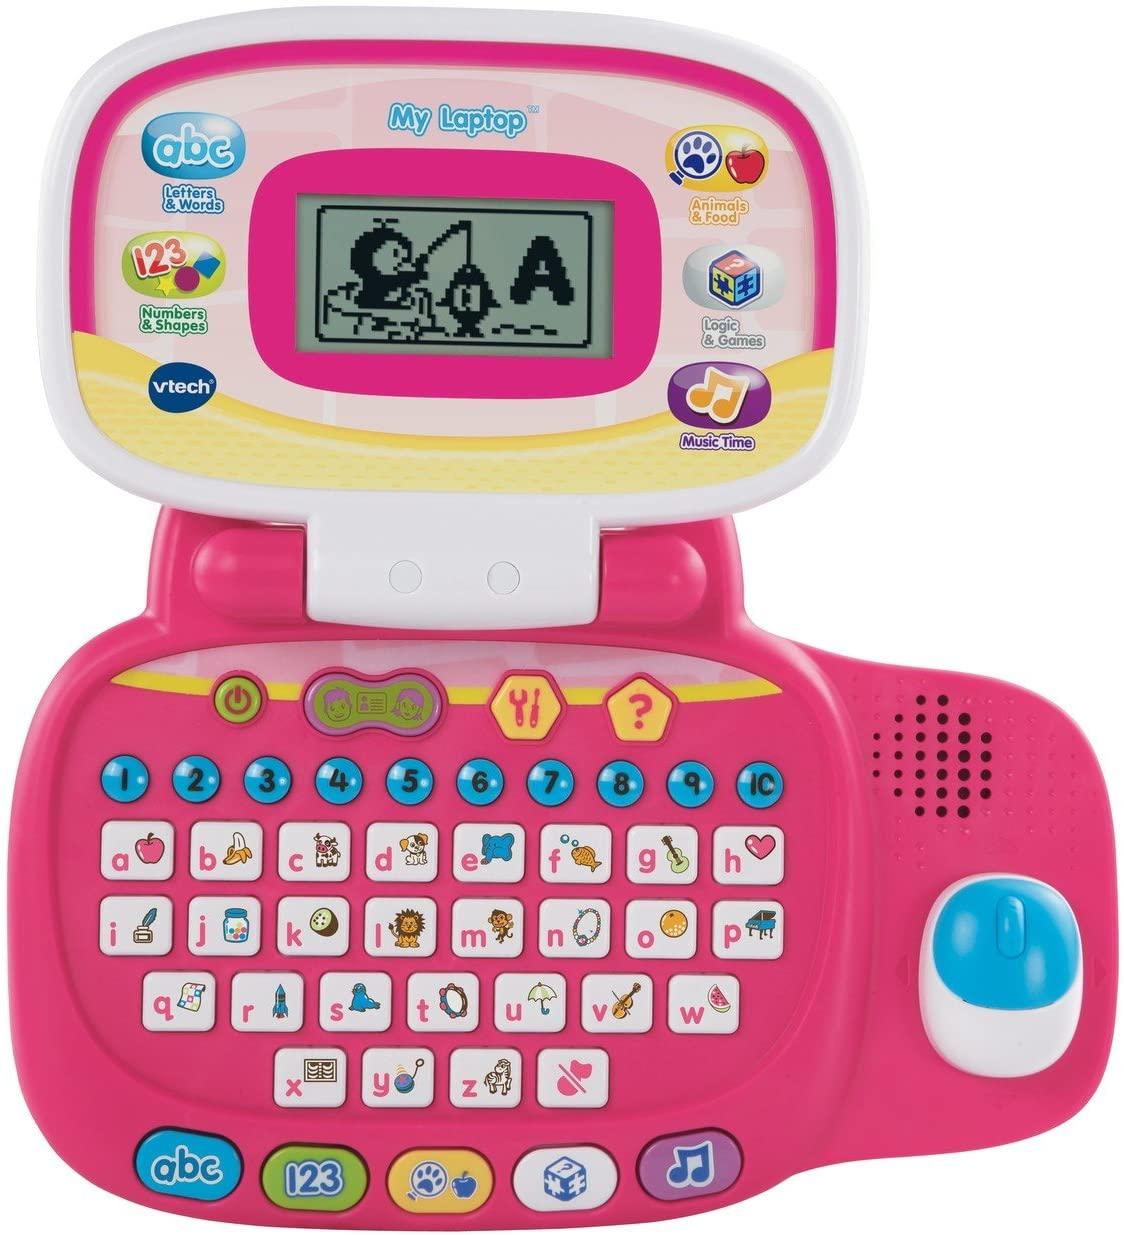 Vtech My Laptop Pink Toymaster Ballina